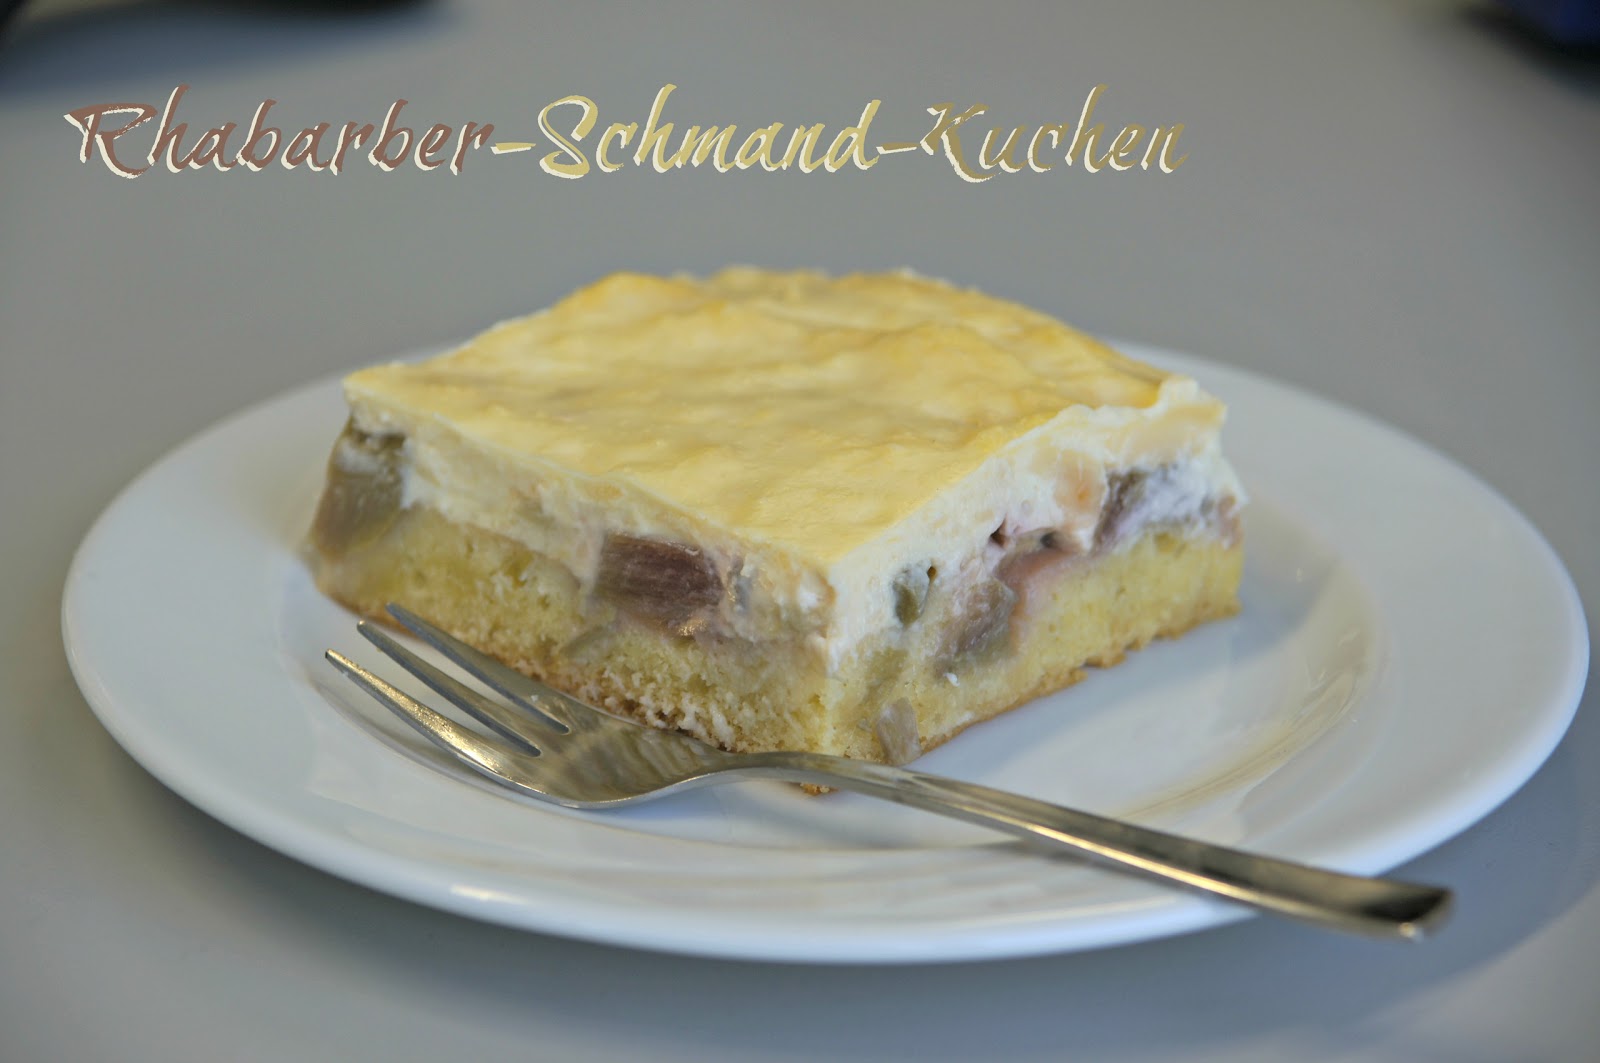 Kochliebe: Rhabarber-Schmand-Kuchen